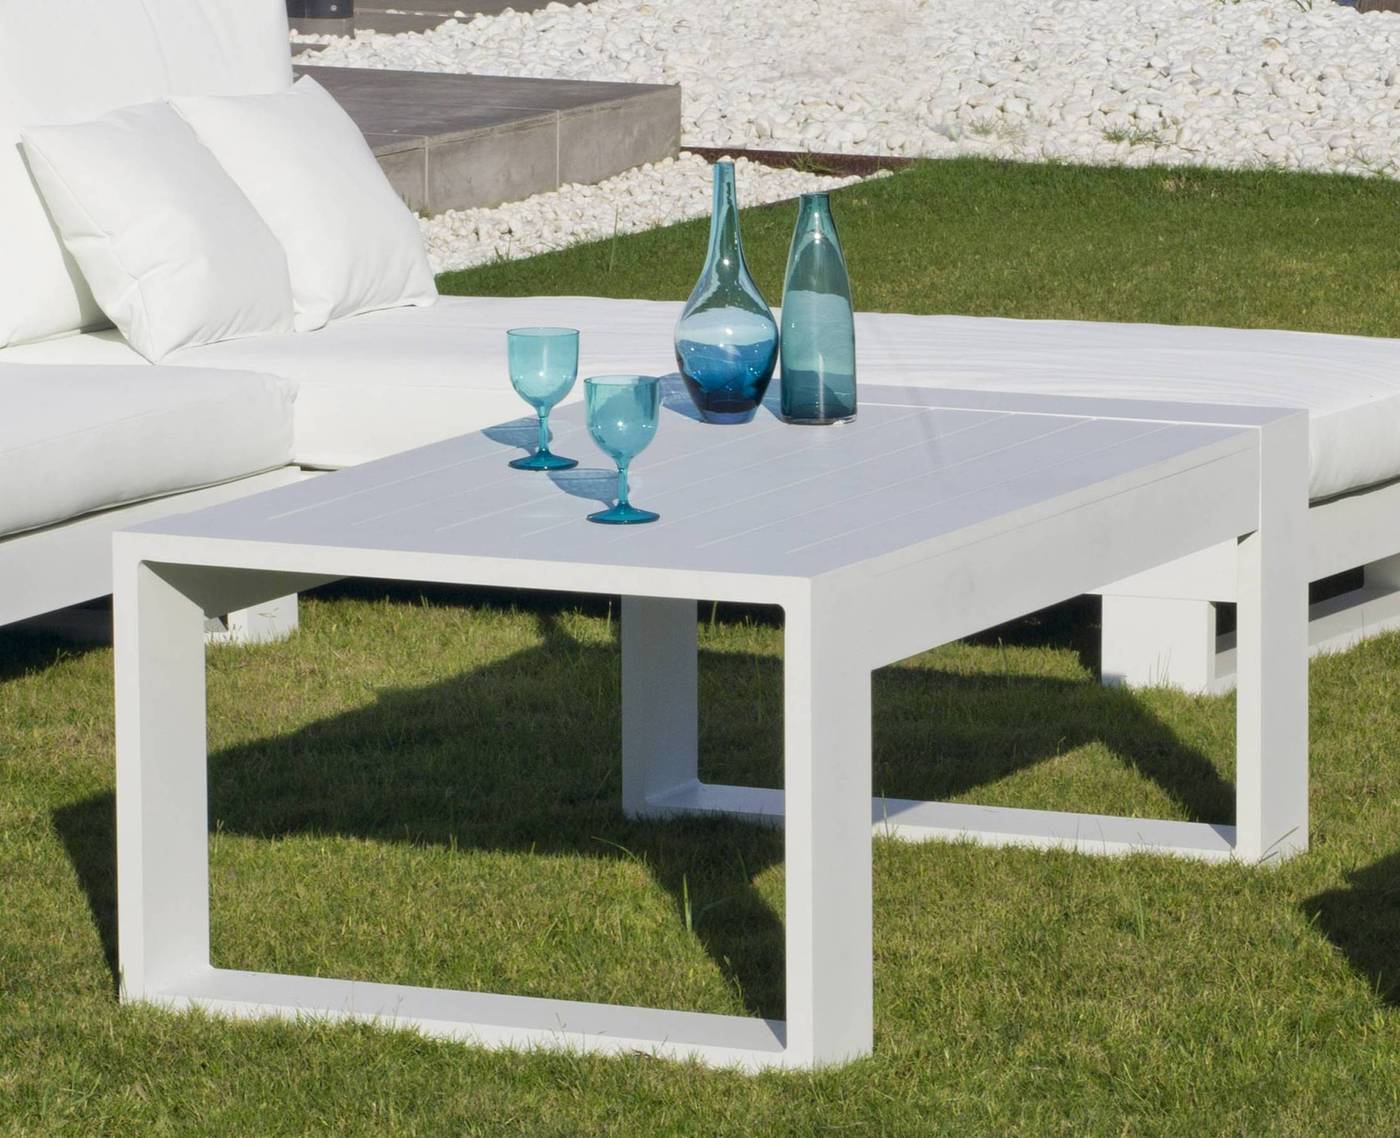 Set Aluminio Luxe Cartago-8 - Conjunto lujoso y robusto de aluminio: 1 sofá de 3 plazas + 2 sillones + 1 mesa de centro + cojines.